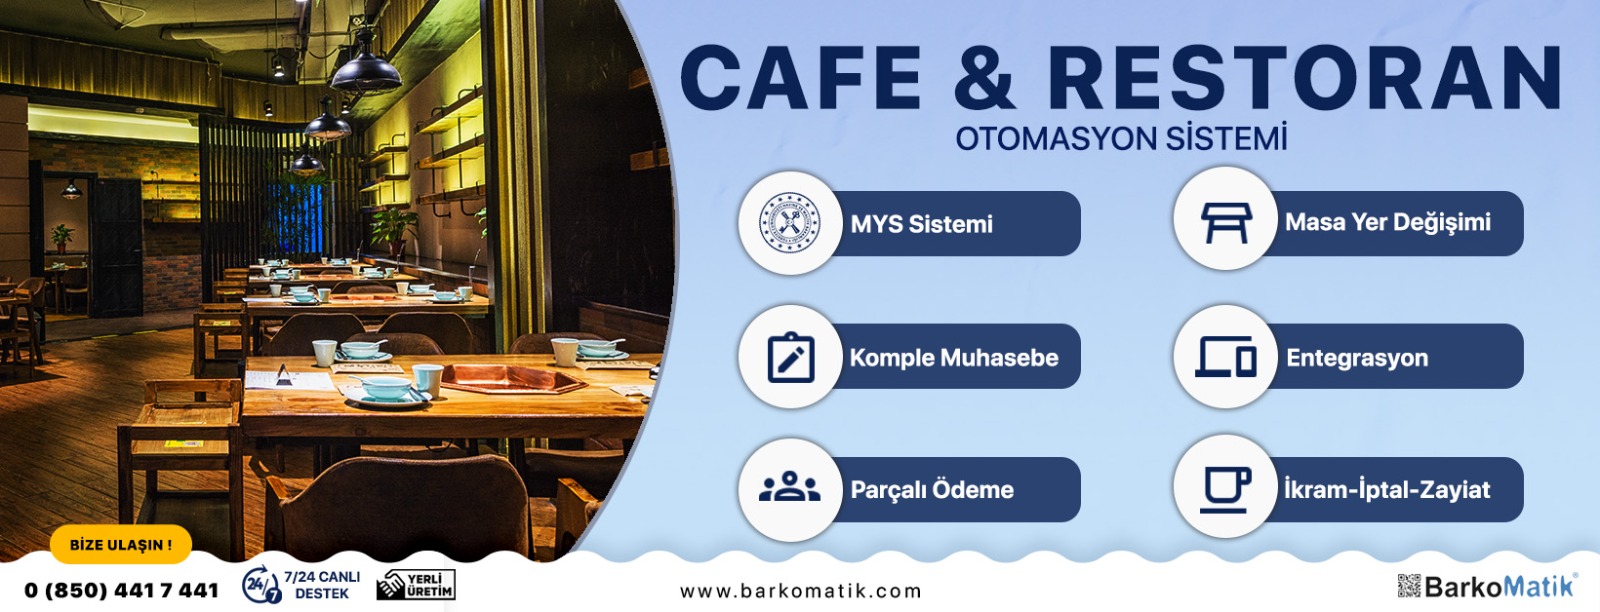 Cafe & Restoran Otomasyon SİSTEMİ